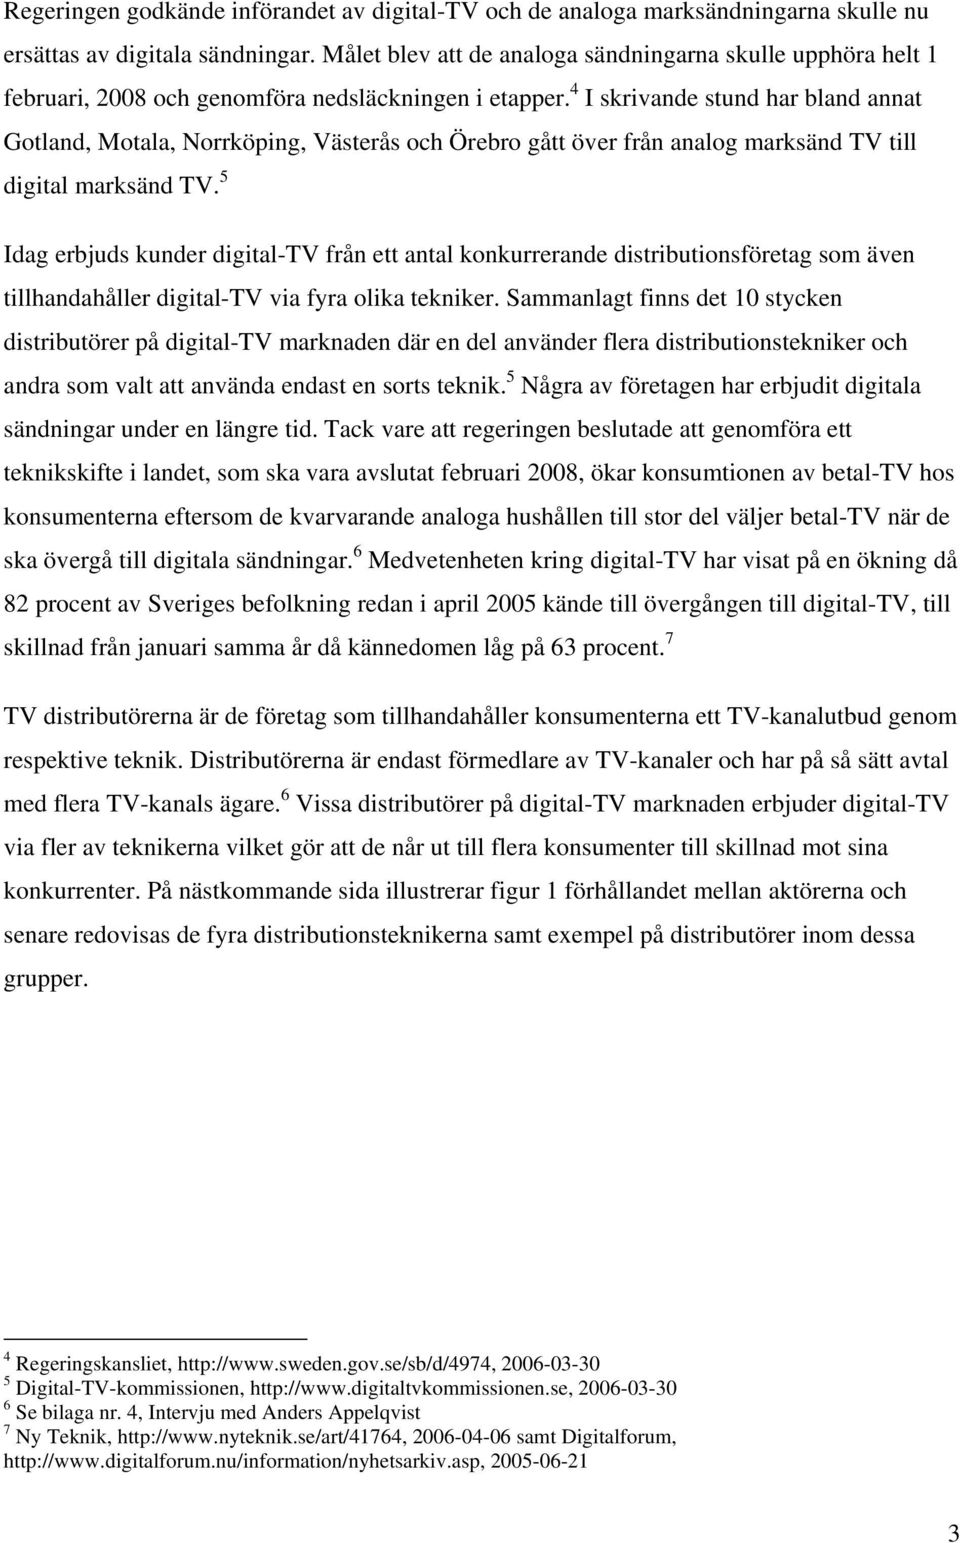 4 I skrivande stund har bland annat Gotland, Motala, Norrköping, Västerås och Örebro gått över från analog marksänd TV till digital marksänd TV.